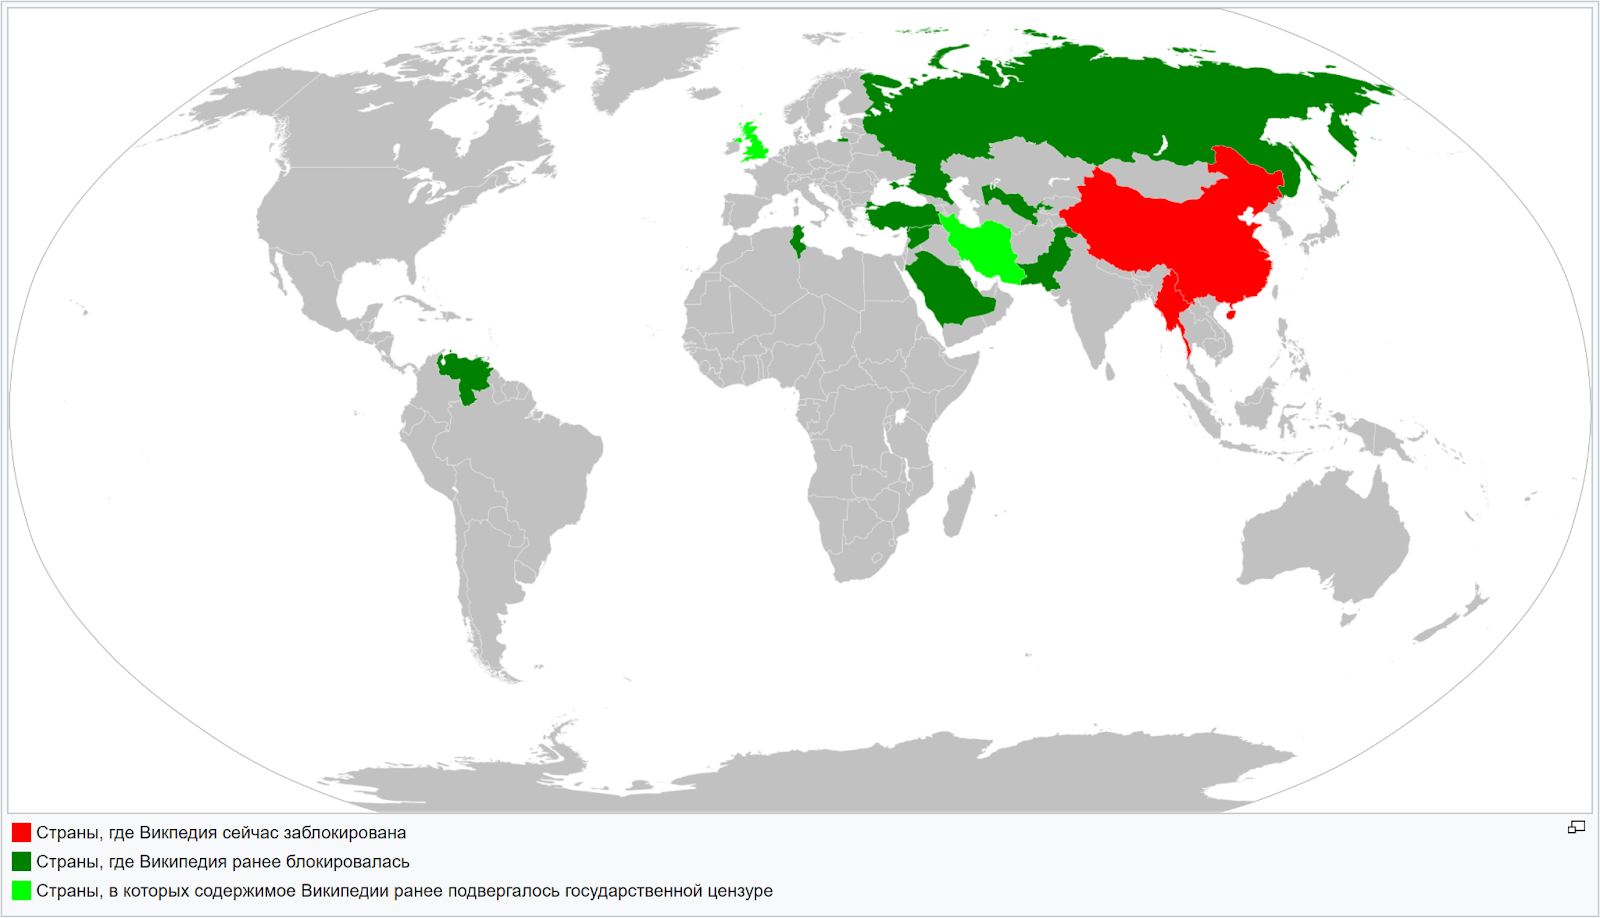 Илл. 6. Карта мира со странами, накладывавшими ограничения на доступ к Википедии